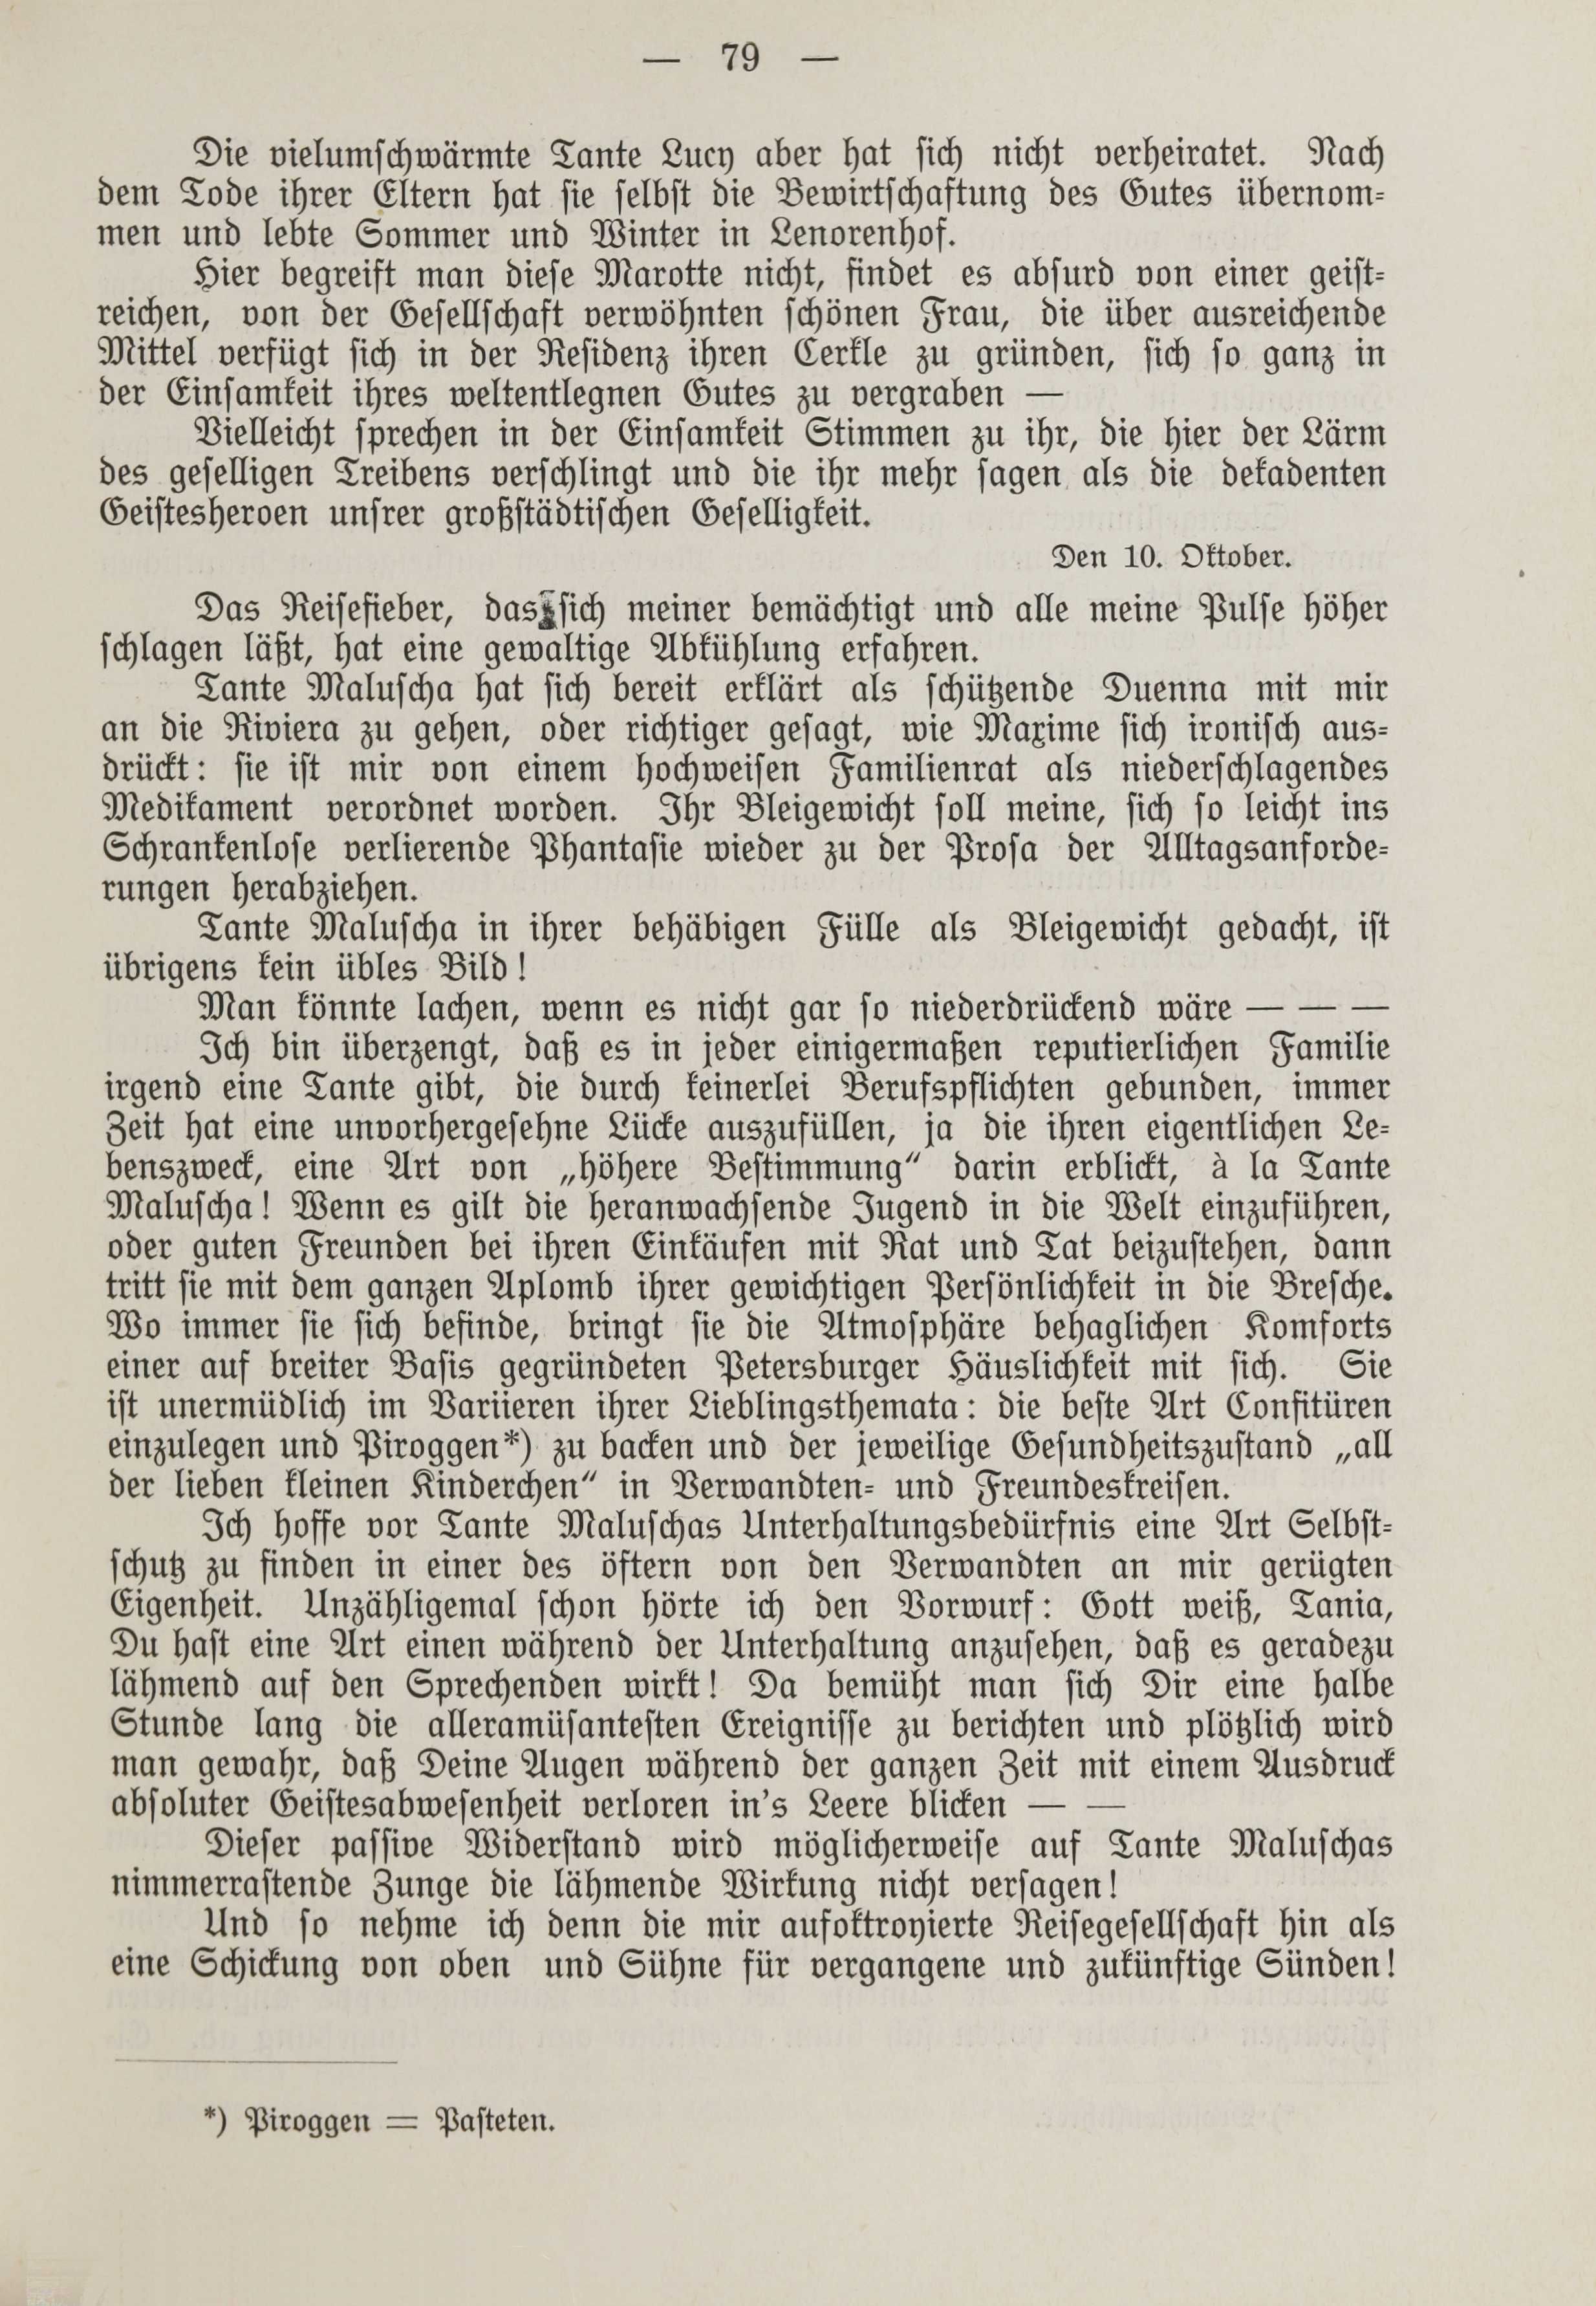 Deutsche Monatsschrift für Russland [1] (1912) | 86. (79) Haupttext